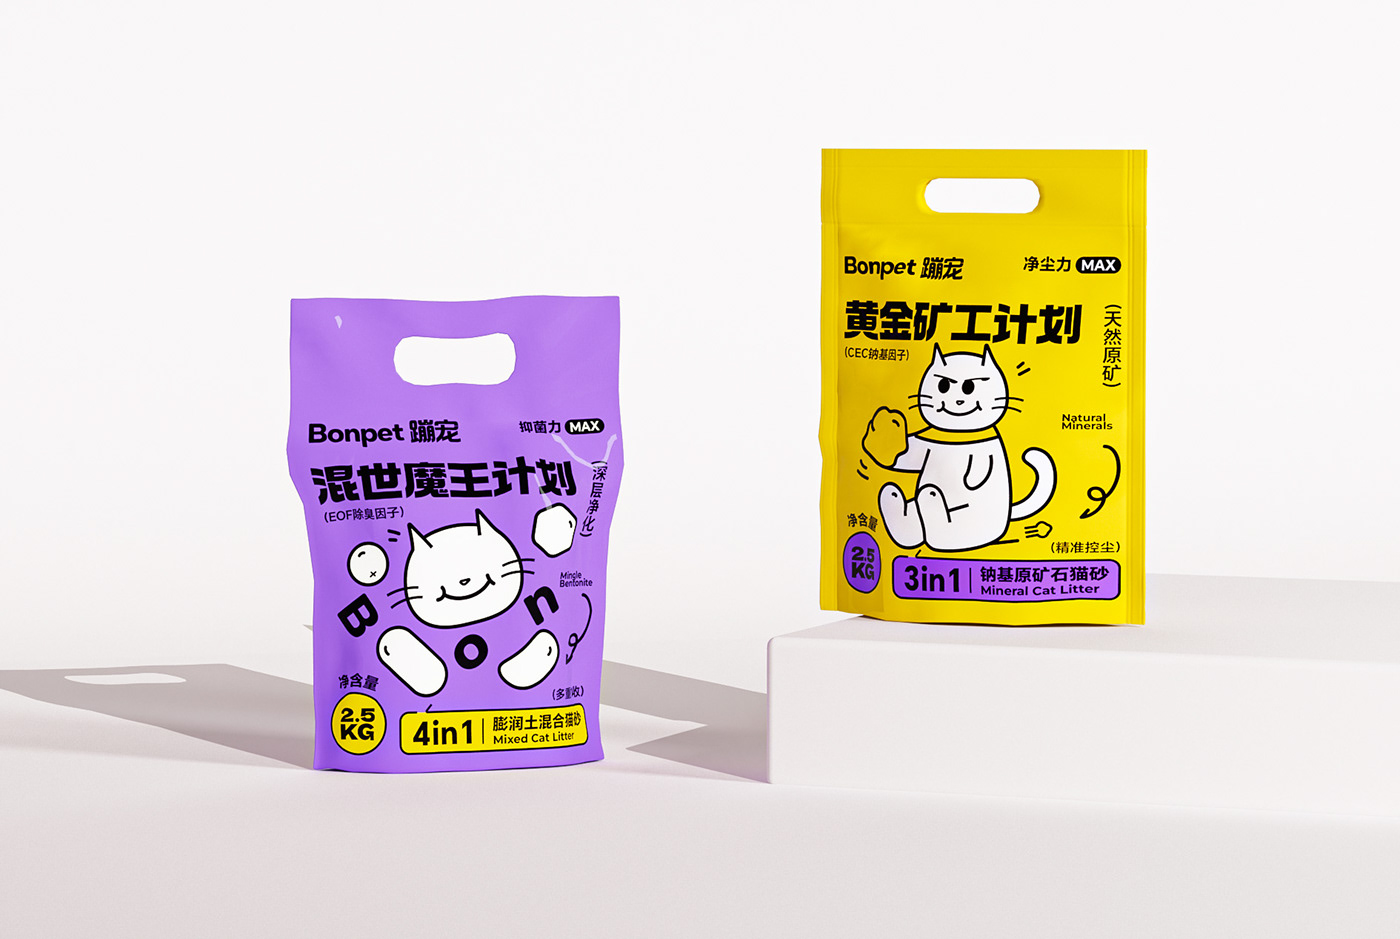 猫砂包装设计 宠物包装设计 宠物包装 猫砂 包装设计 Cat Litter Packaging 宠物品牌设计 宠物用品包装设计 猫砂包装 猫砂品牌设计